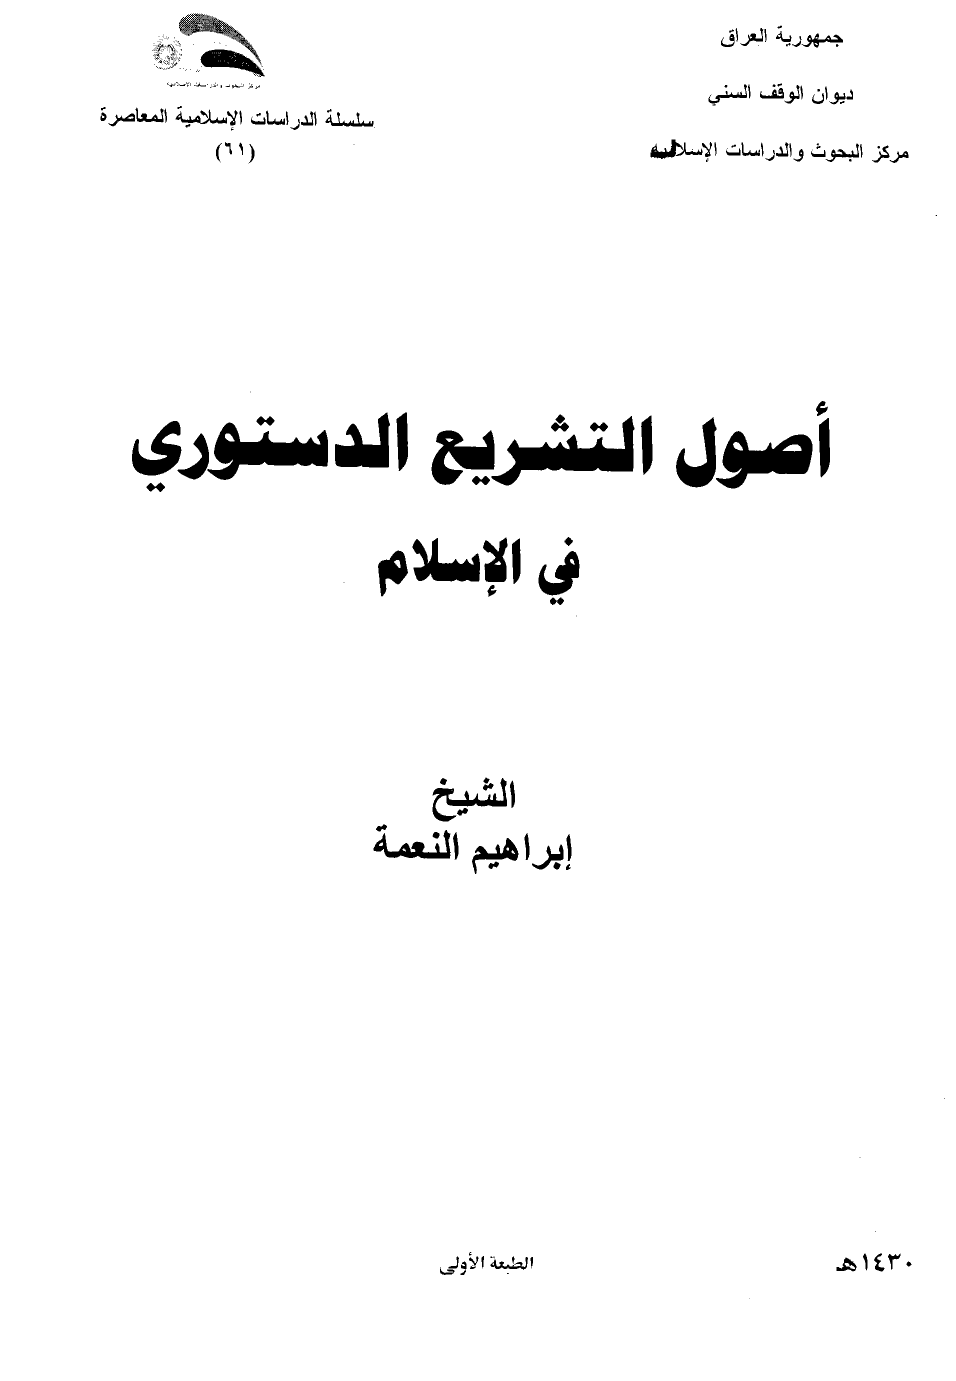 تنزيل وتحميل كتاِب أصول التشريع الدستوري في الإسلام pdf برابط مباشر مجاناً 